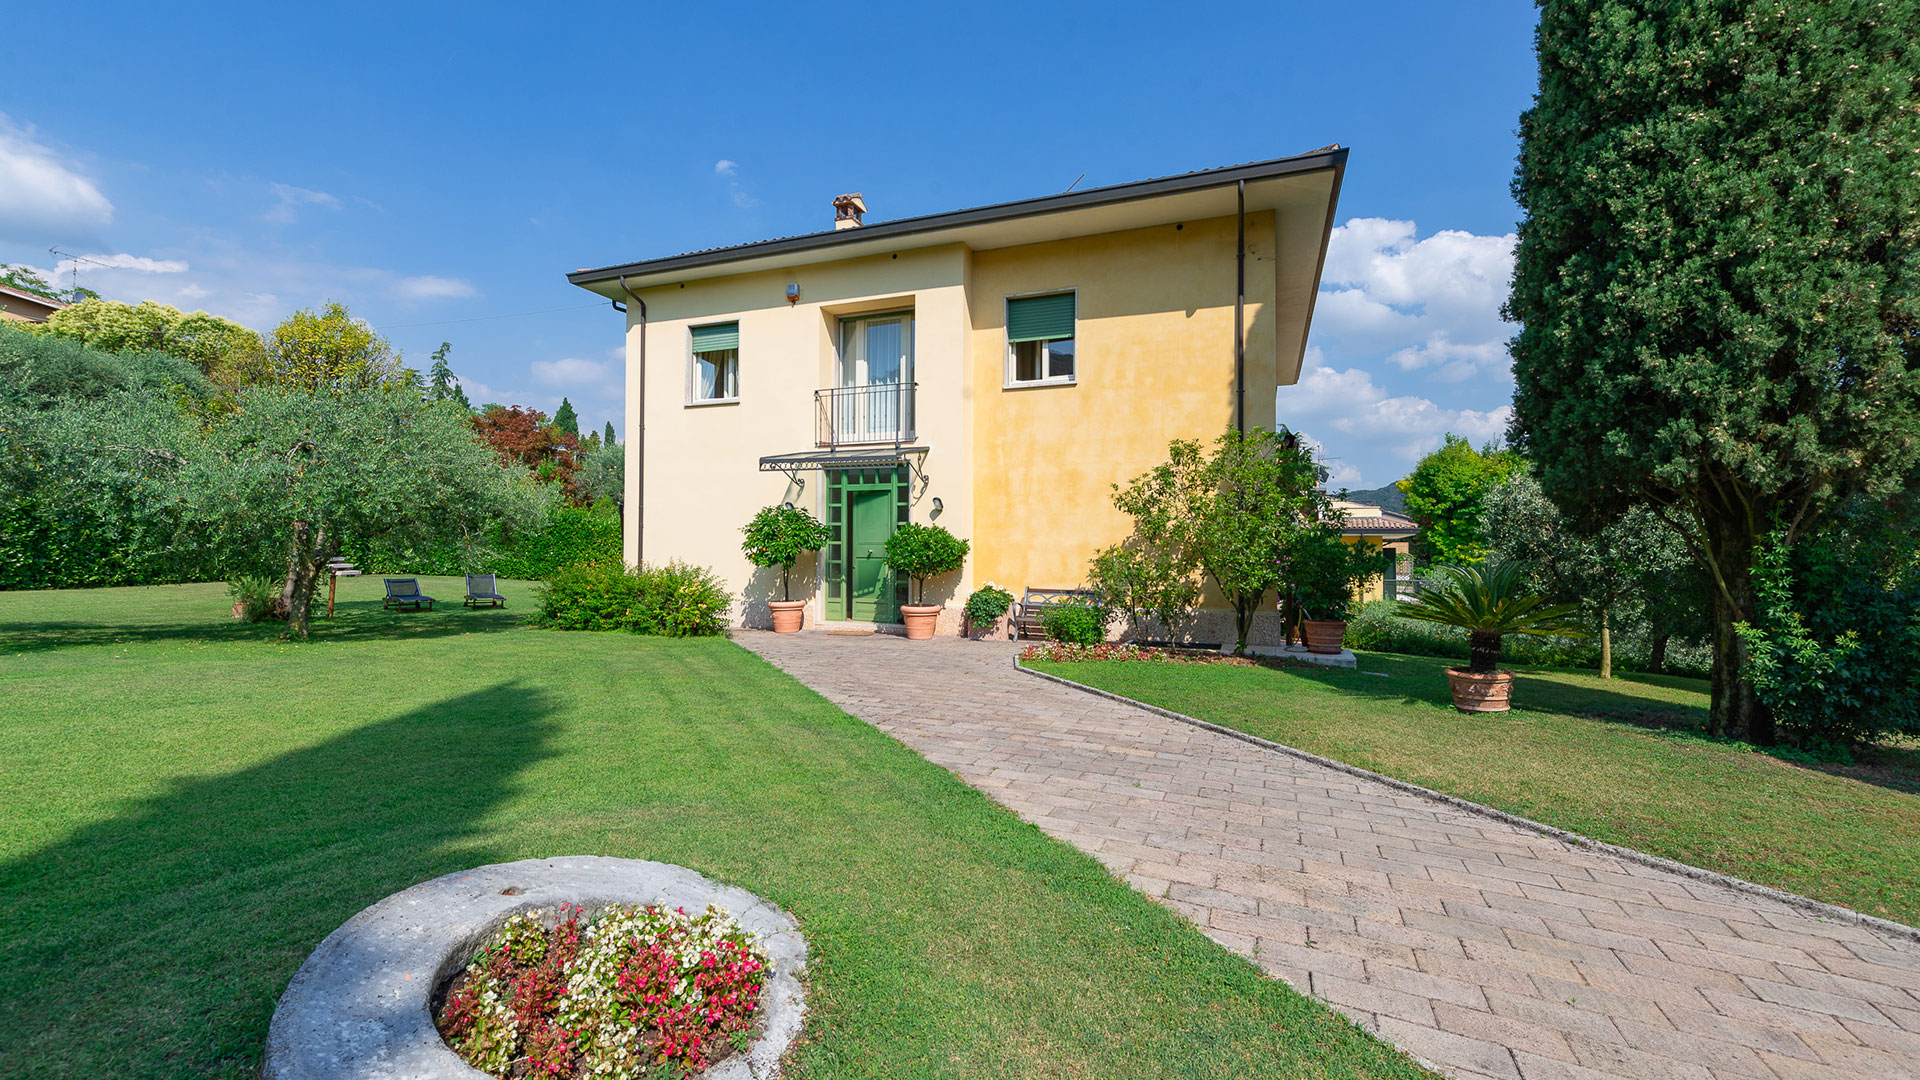 Villa in Garda mit 4SZ, 3 Bäder, Garage, Garten, traumhafter Seeblick